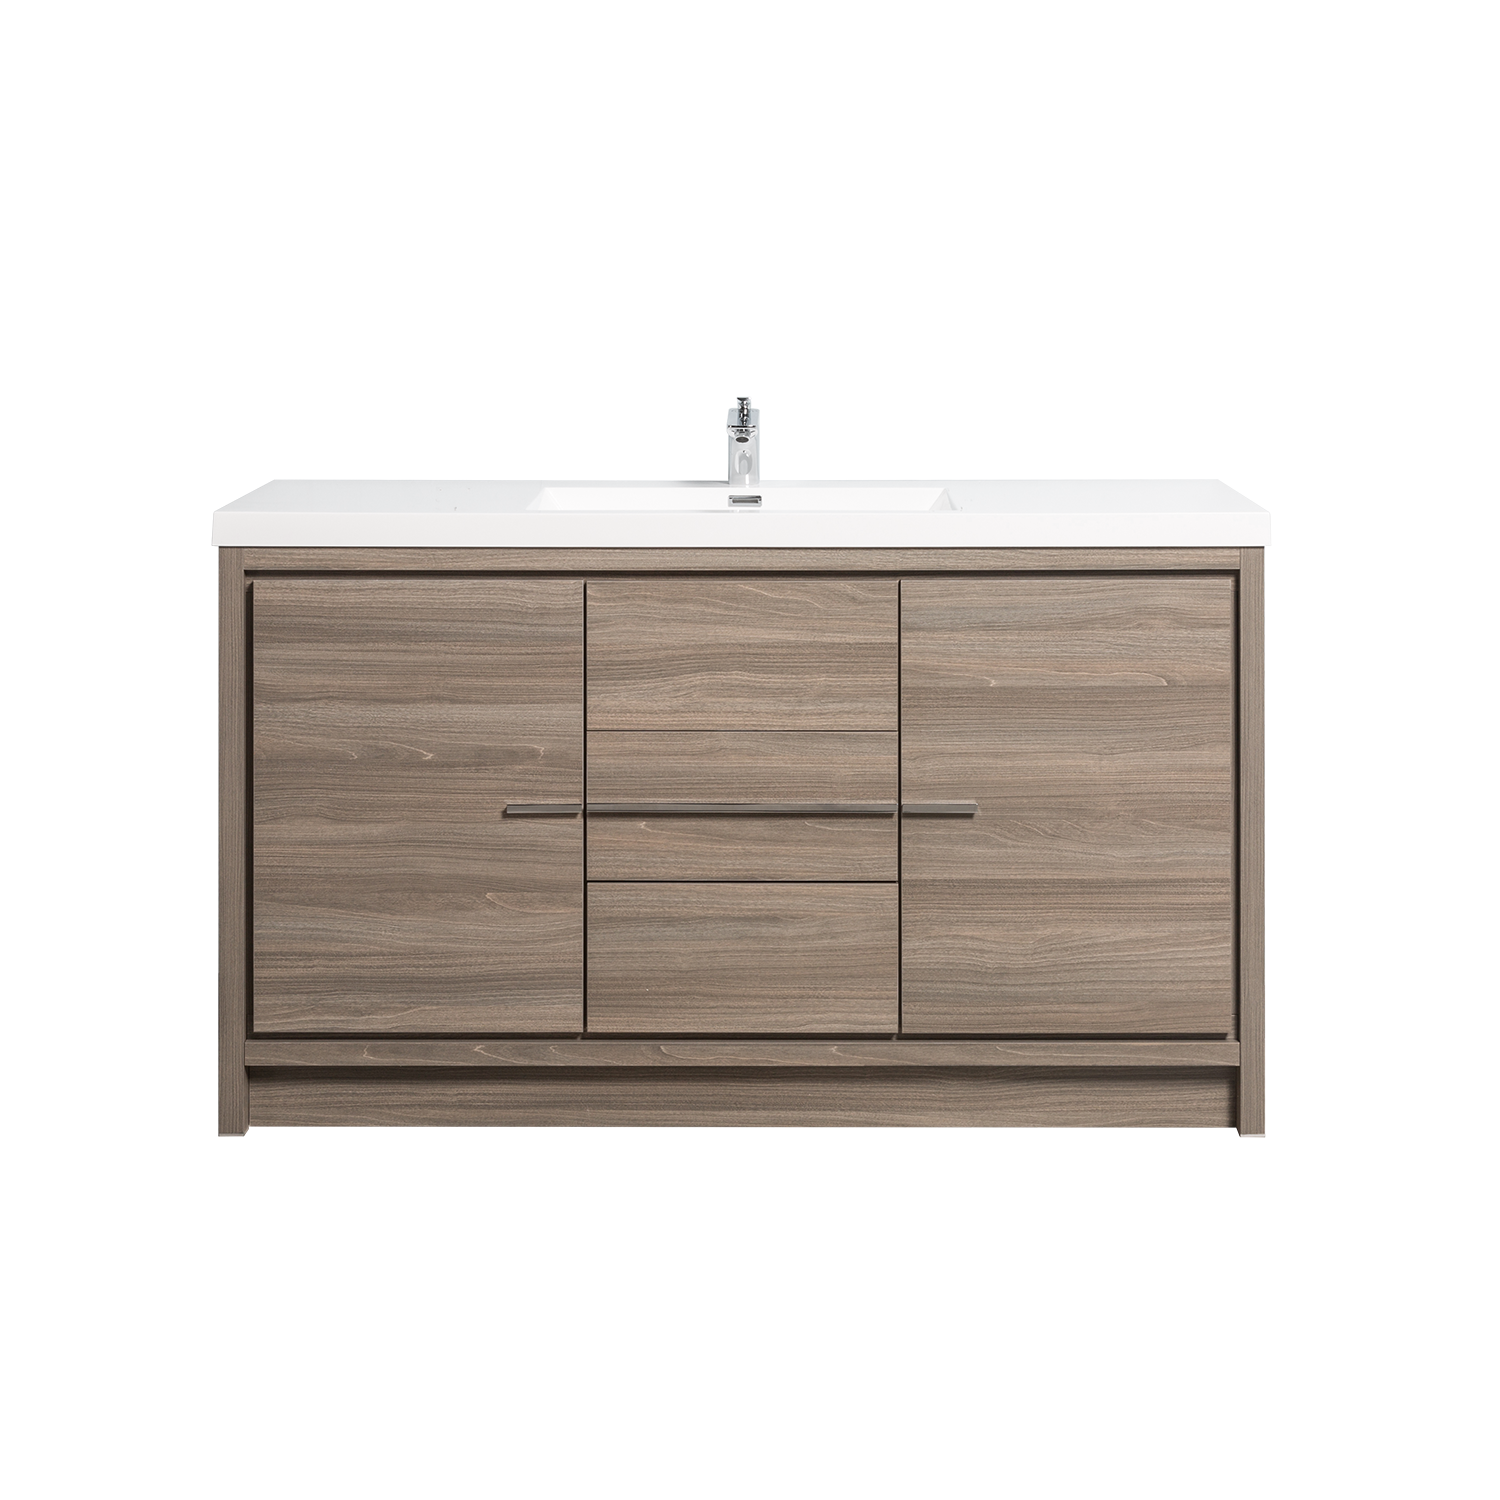 Duko Allier 60 60" Rectangular Sink Bathroom Vanity Cabinet